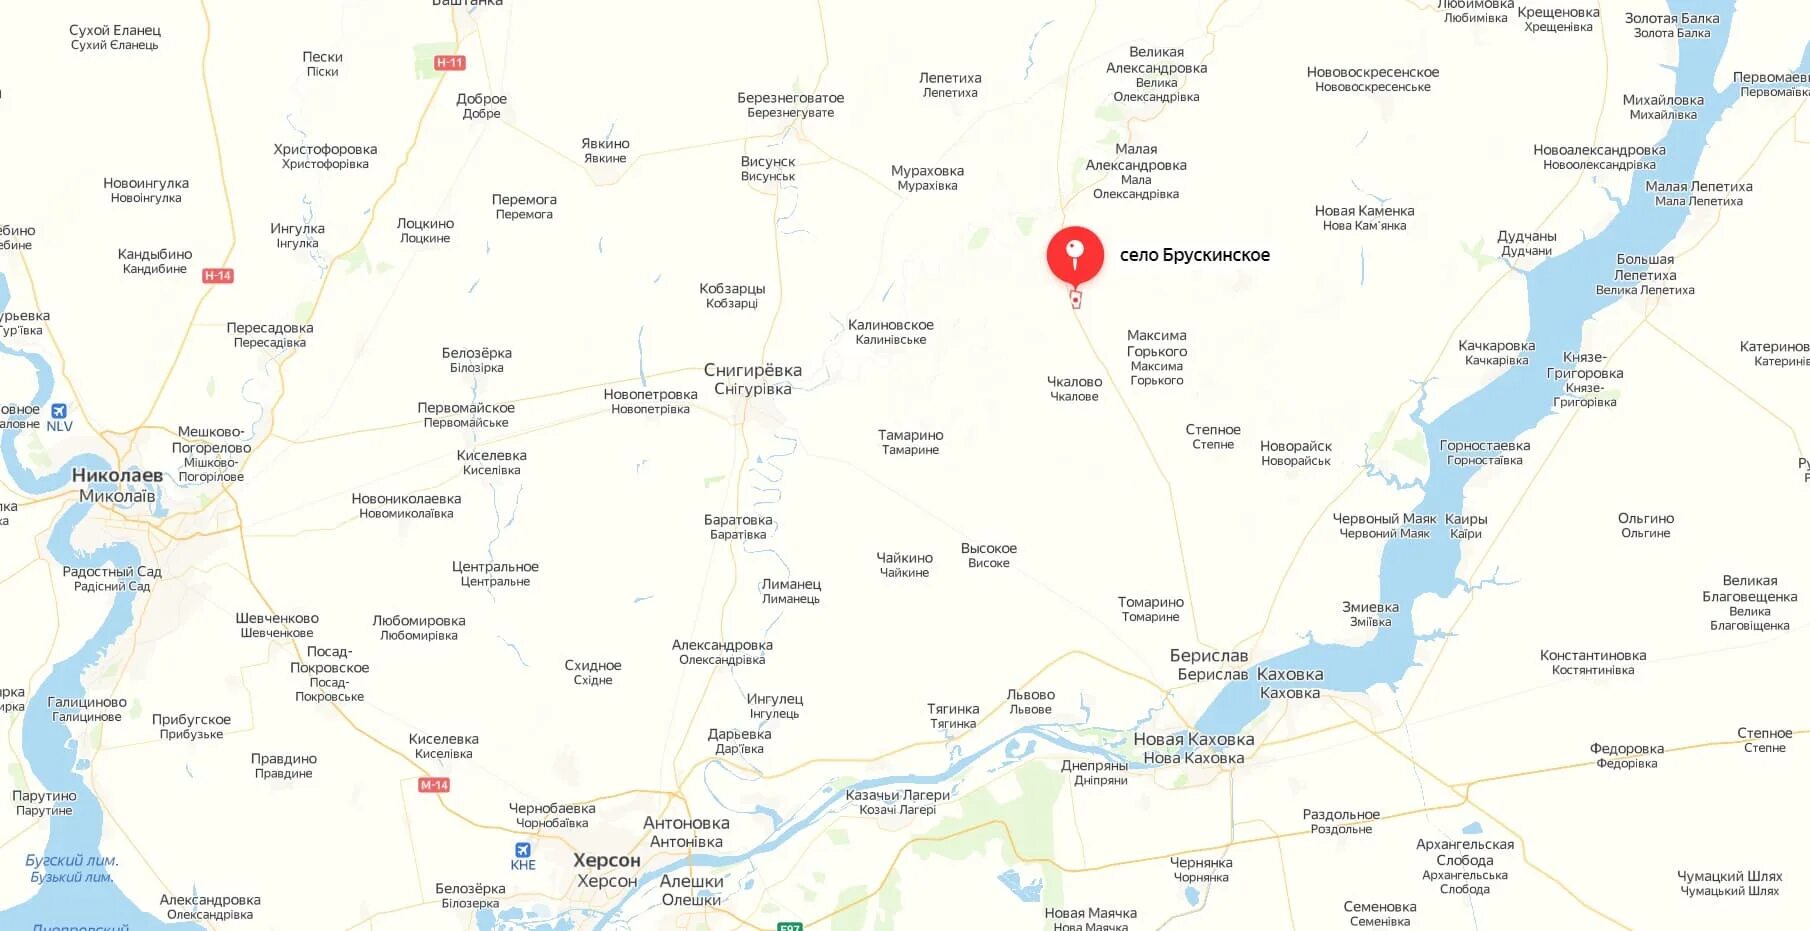 Херсонская область на карте. Херсонская область на карте Украины. Карта Украины Херсонская область на карте. Антоновка Херсонская область на карте. Крынки украина херсонская область показать на карте